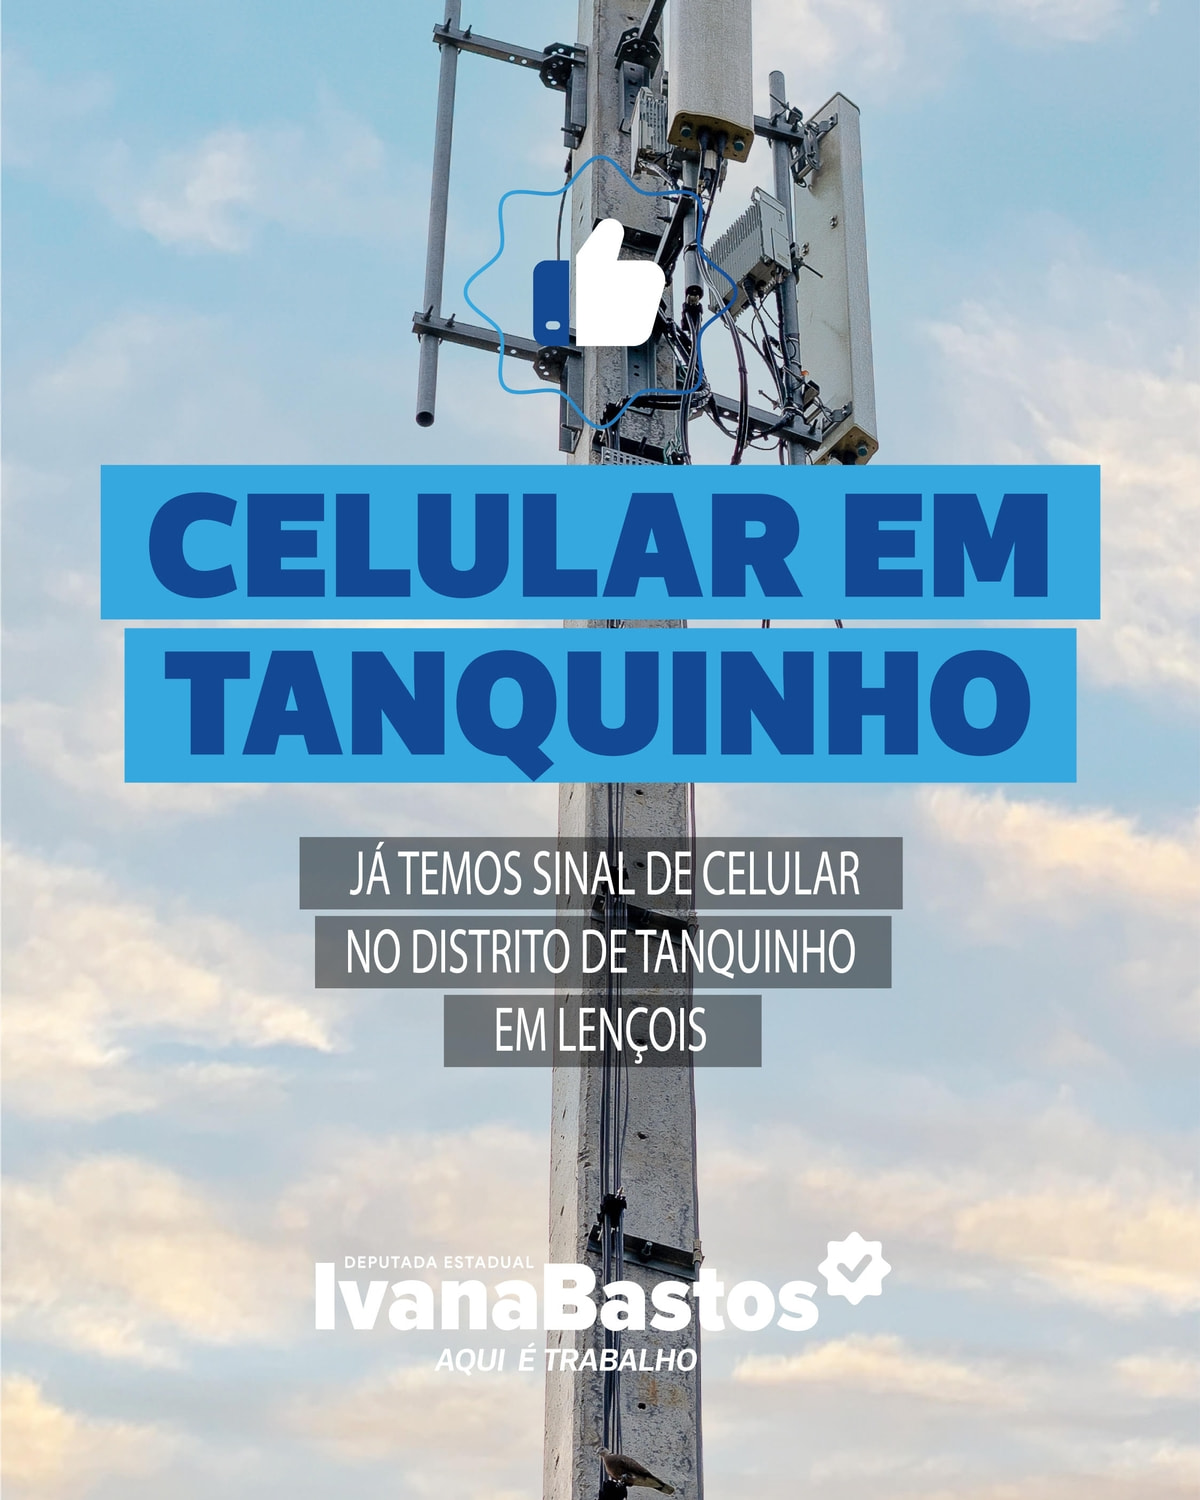  O sinal de celular chegou no distrito de Tanquinho em Lençóis, graças ao trabalho de Ivana Bastos 